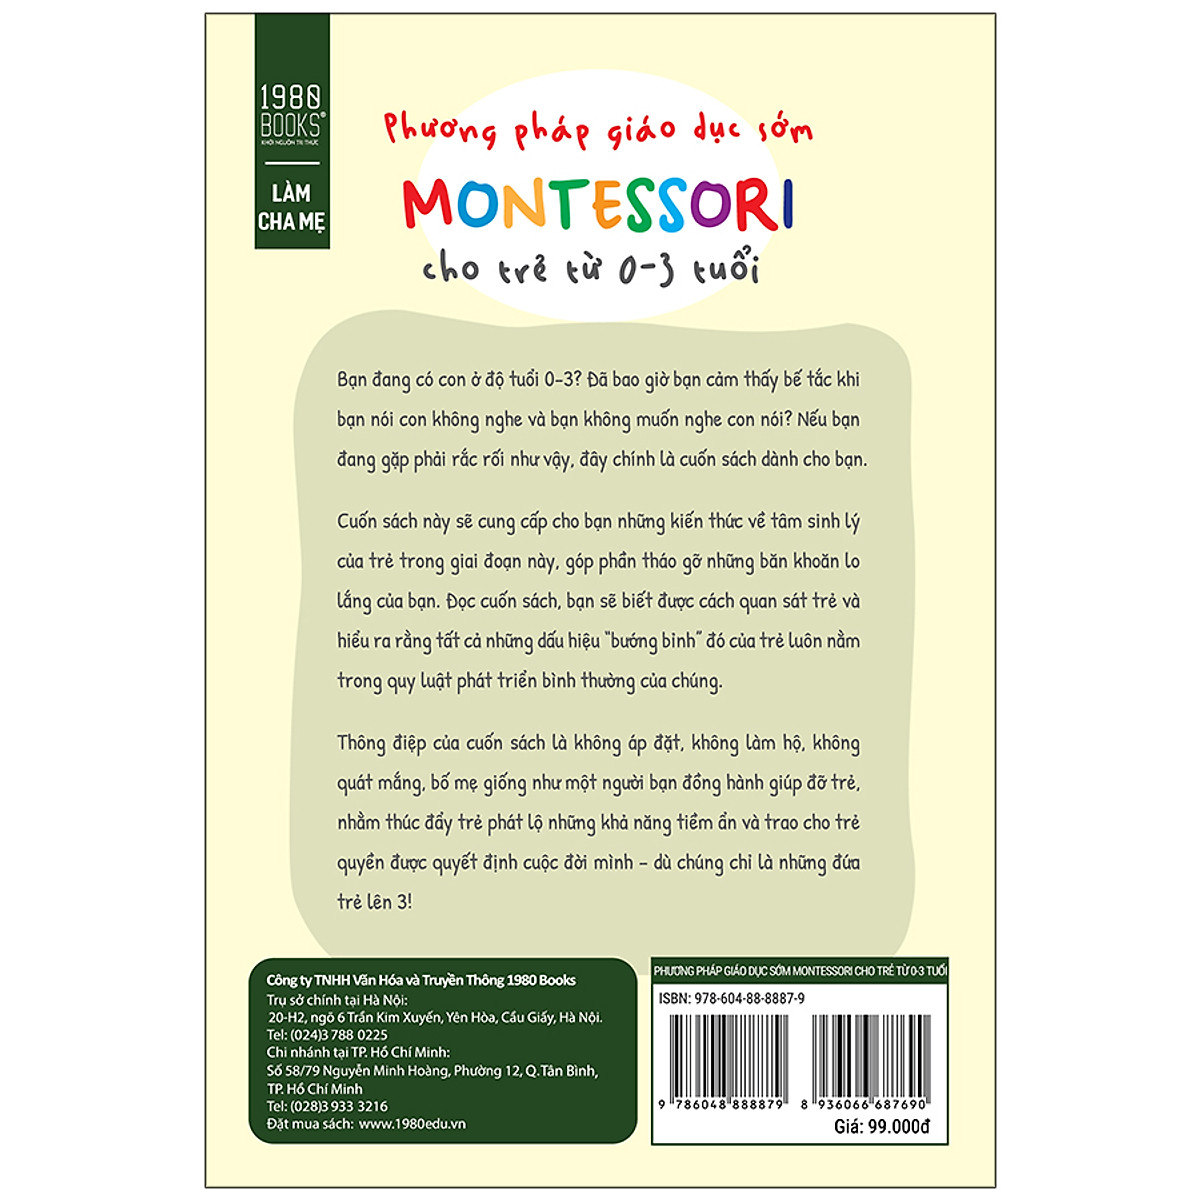 Cuốn Sách Tuyệt Vời Giúp Khơi Gợi Tiềm Năng, Định Hình Nhân Cách Trẻ: Phương Pháp Giáo Dục Sớm Montessori Cho Trẻ Từ 0 – 3 Tuổi